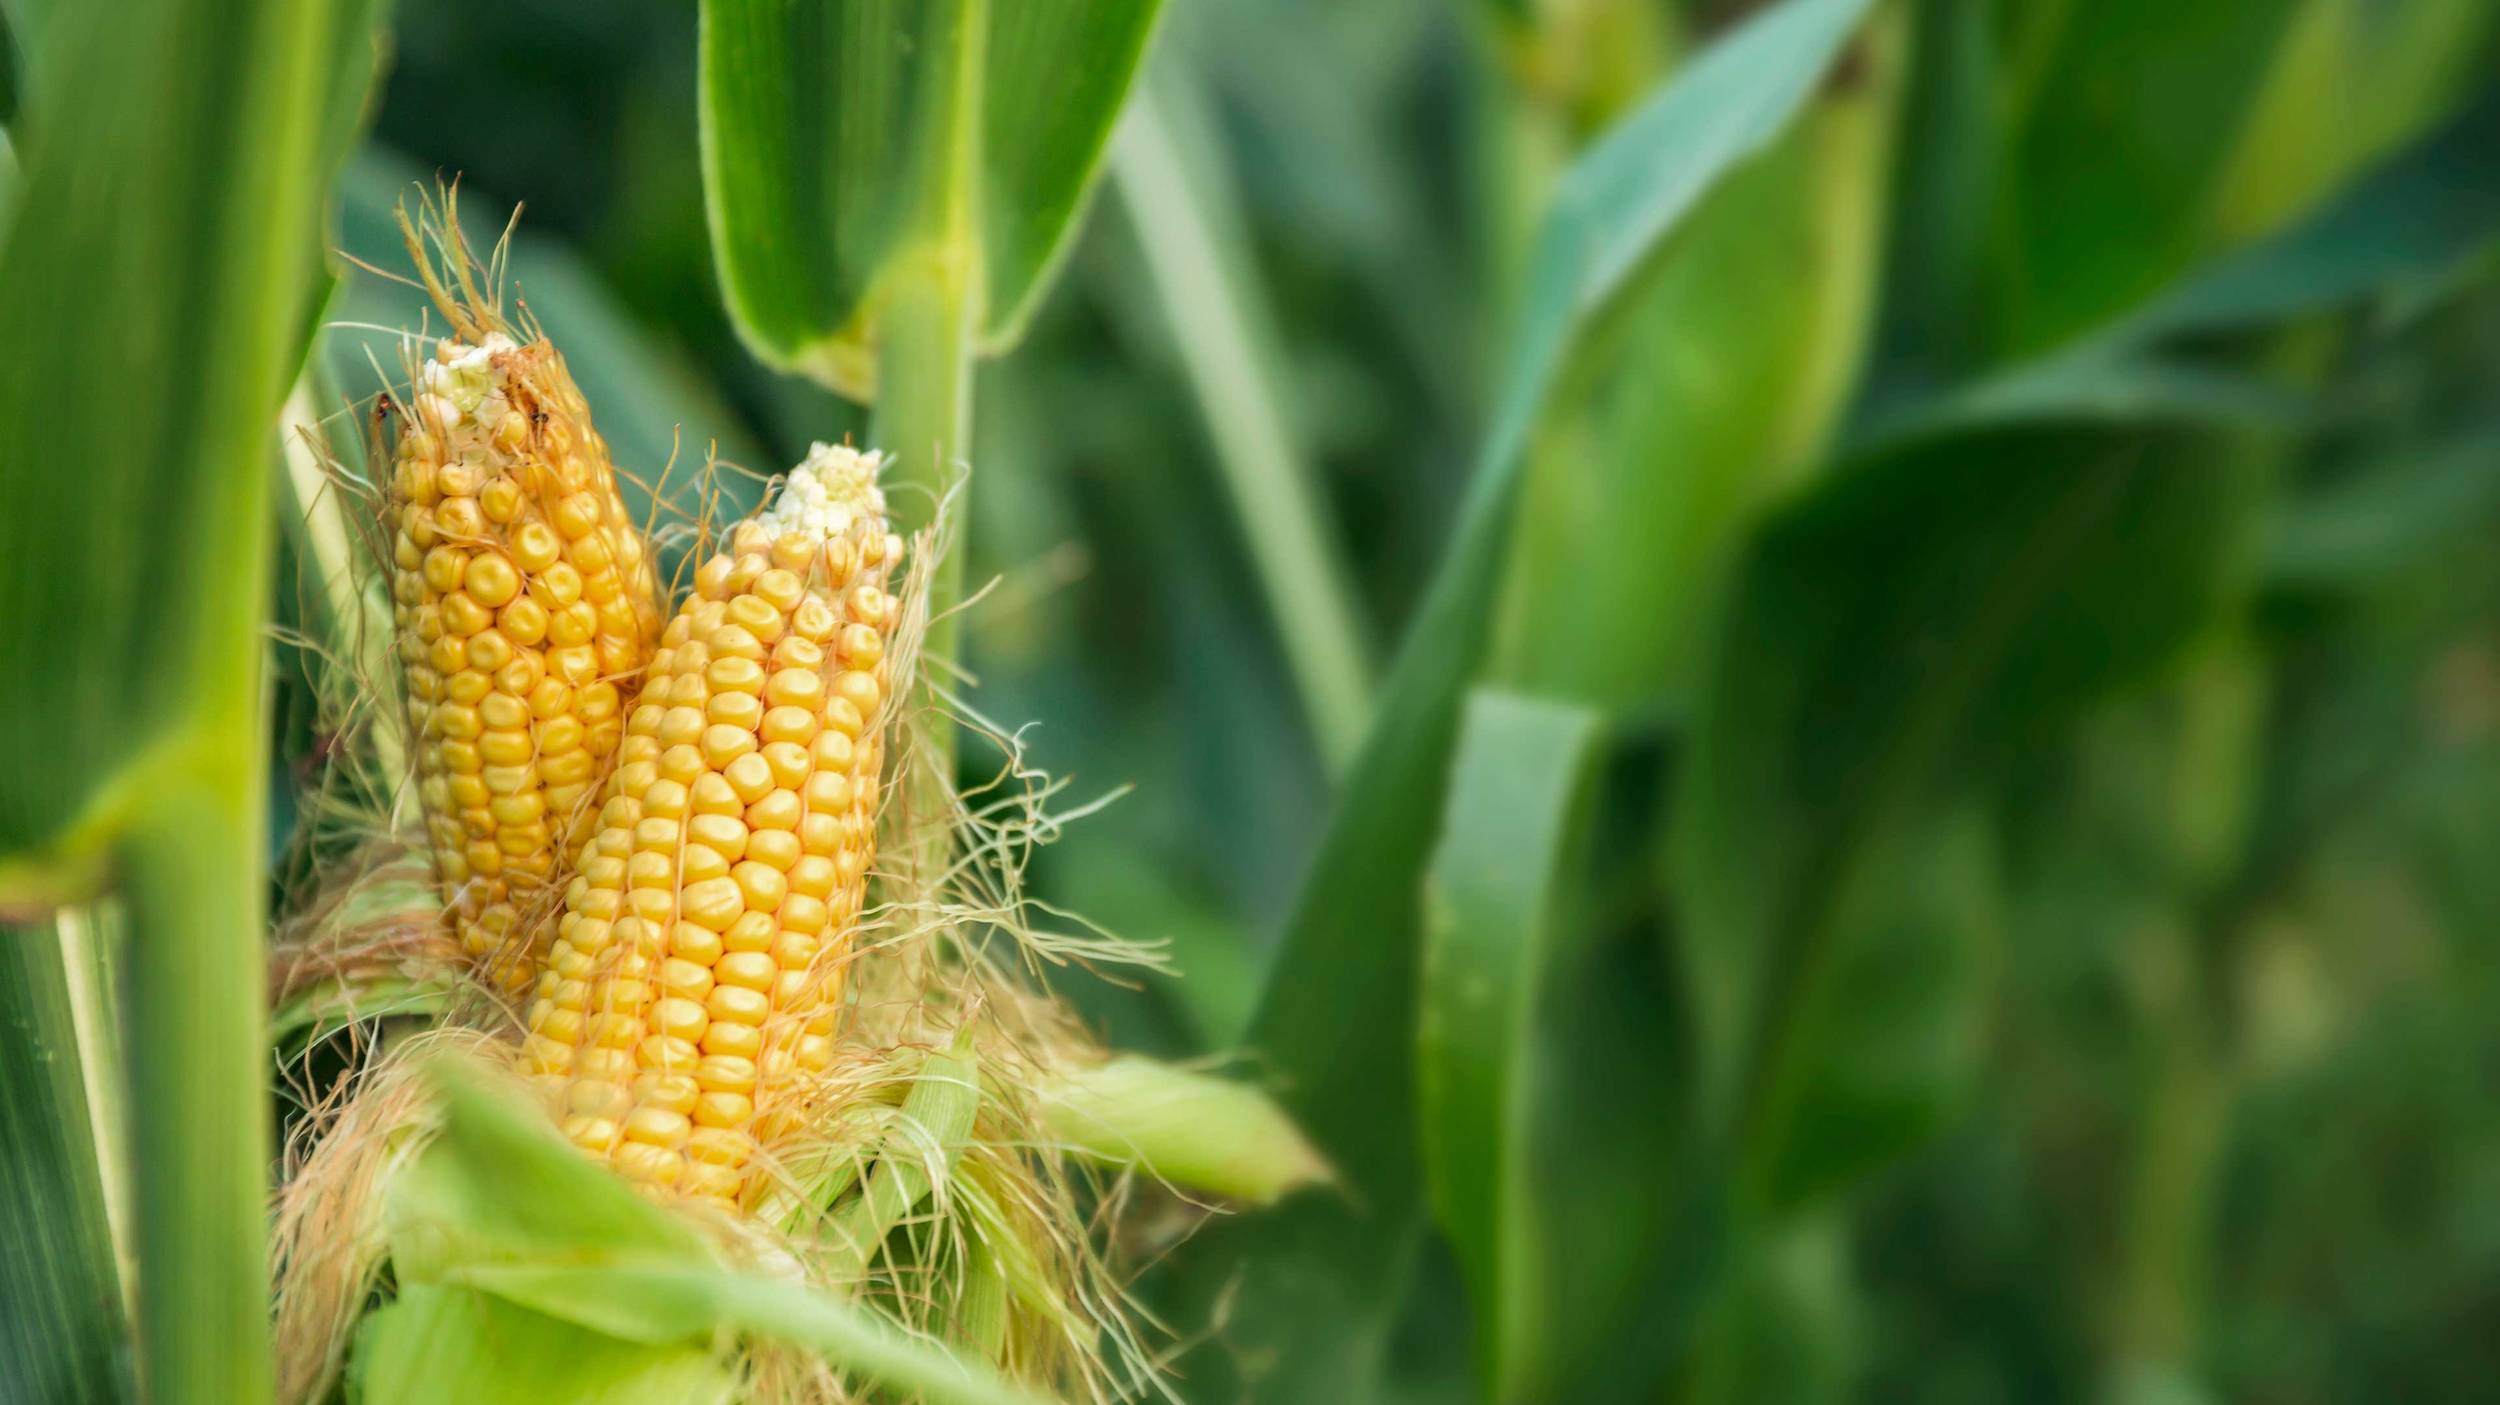 Cono es el socio de cultivos en el que pueden confiar los clientes para recibir palomitas de maíz producidas sustentablemente.